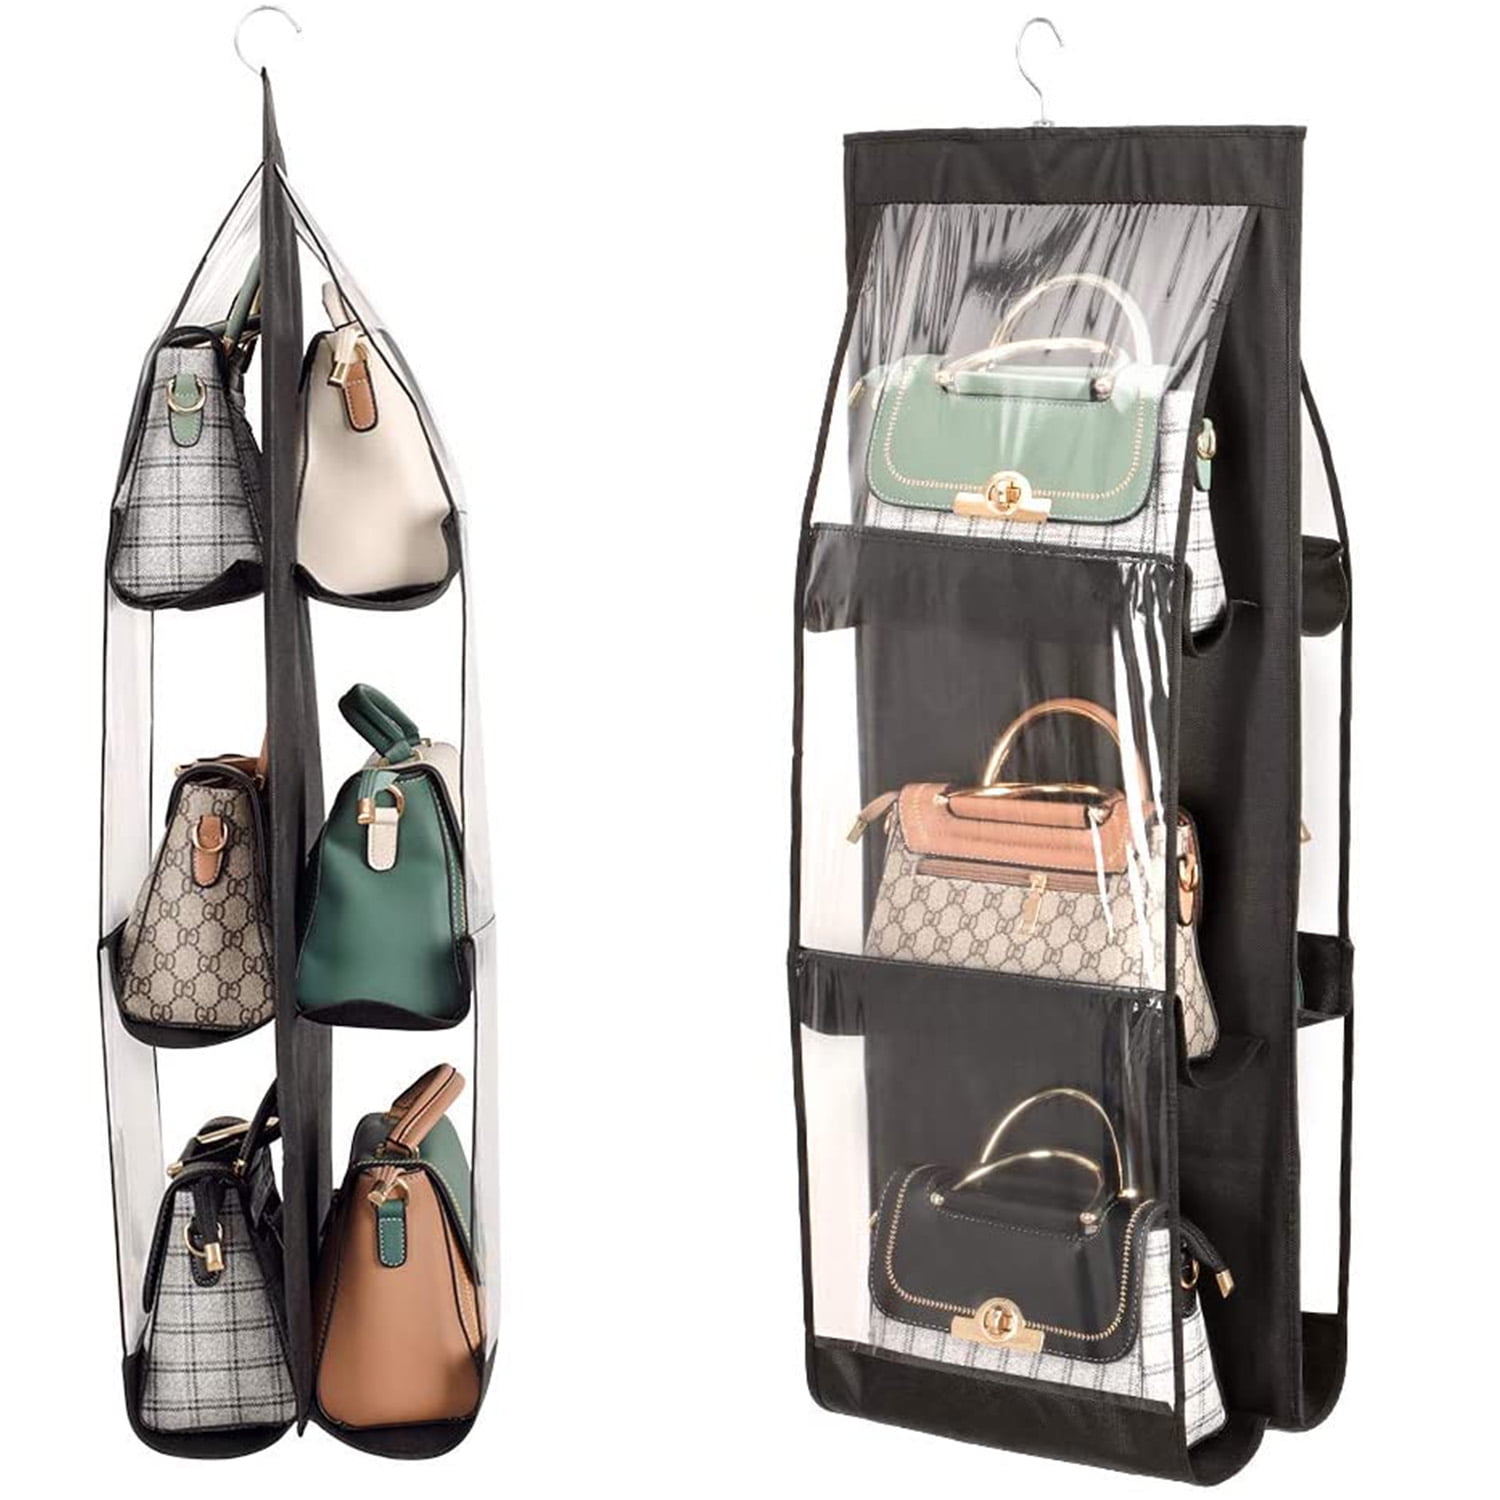 Gisneze Detachable Hanging Handbag Purse Organizer for Closet, Purse Bag  Storage Holder for Wardrobe Closet with 4 Shelves Space Saving Purse  Organizers - Walmart.com